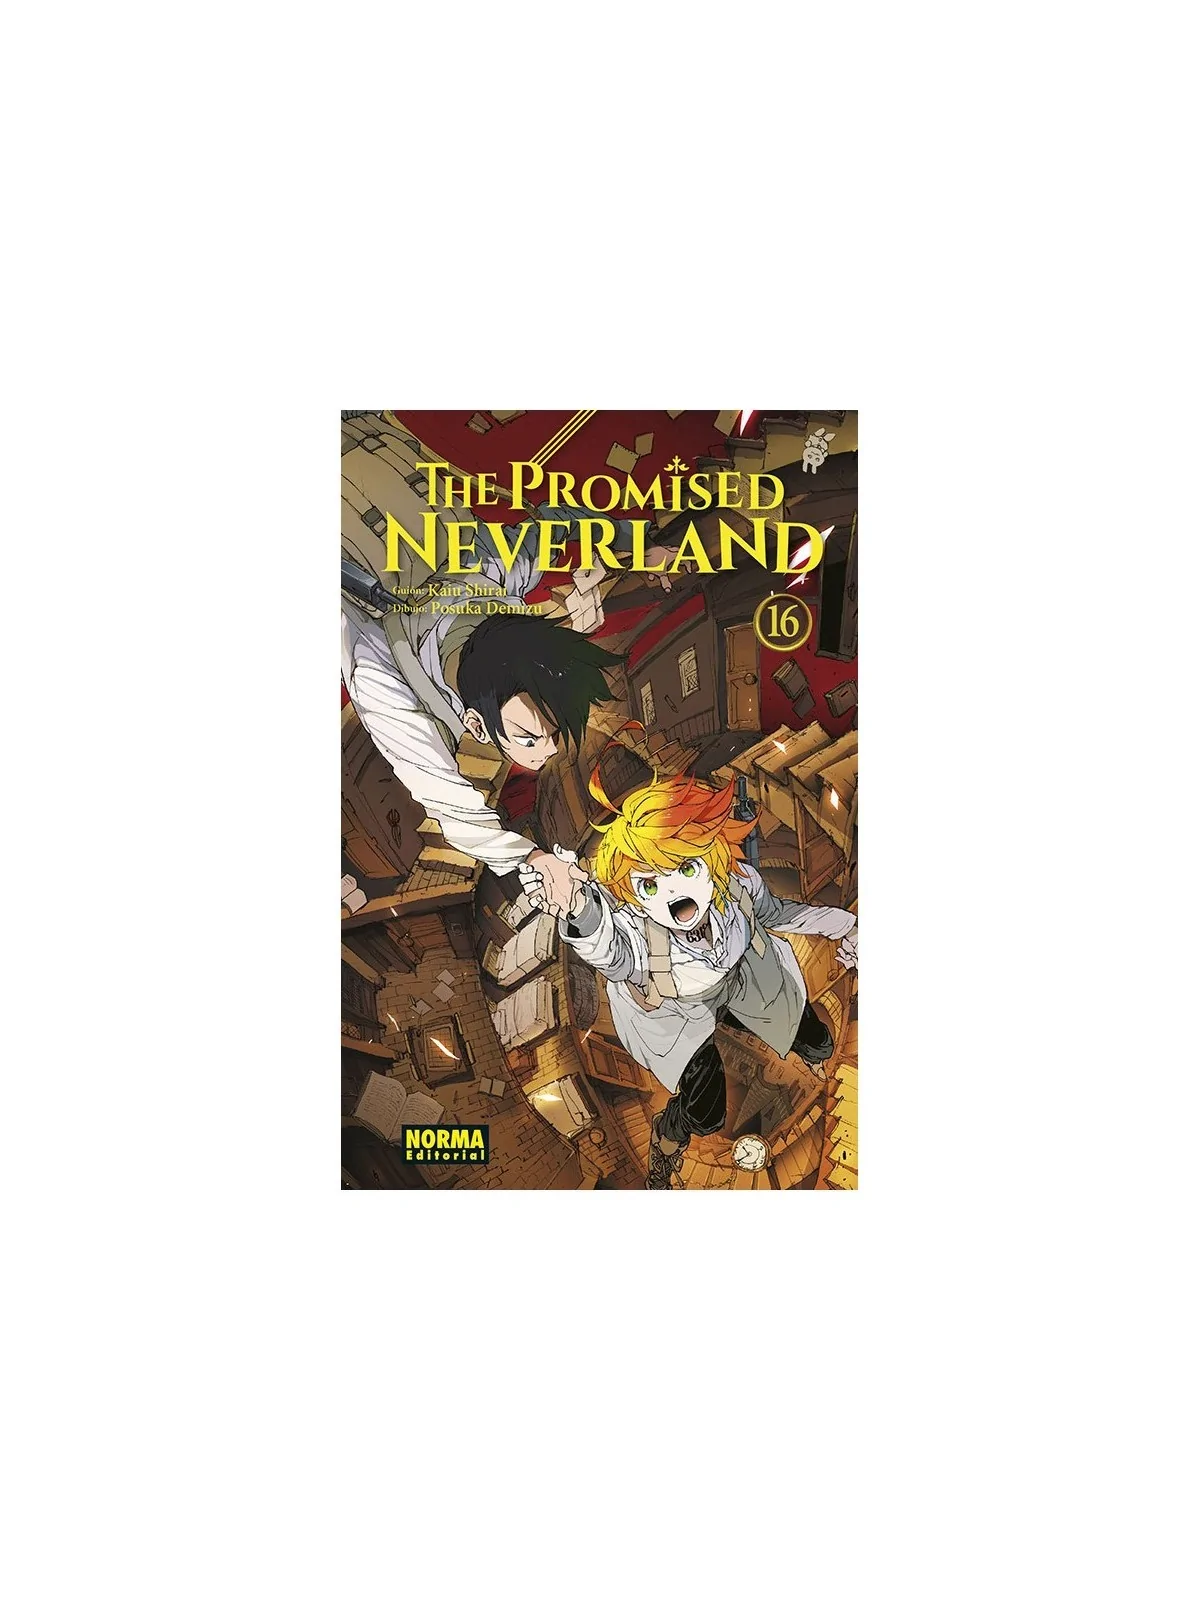 Comprar The Promised Neverland 16 barato al mejor precio 7,60 € de Nor